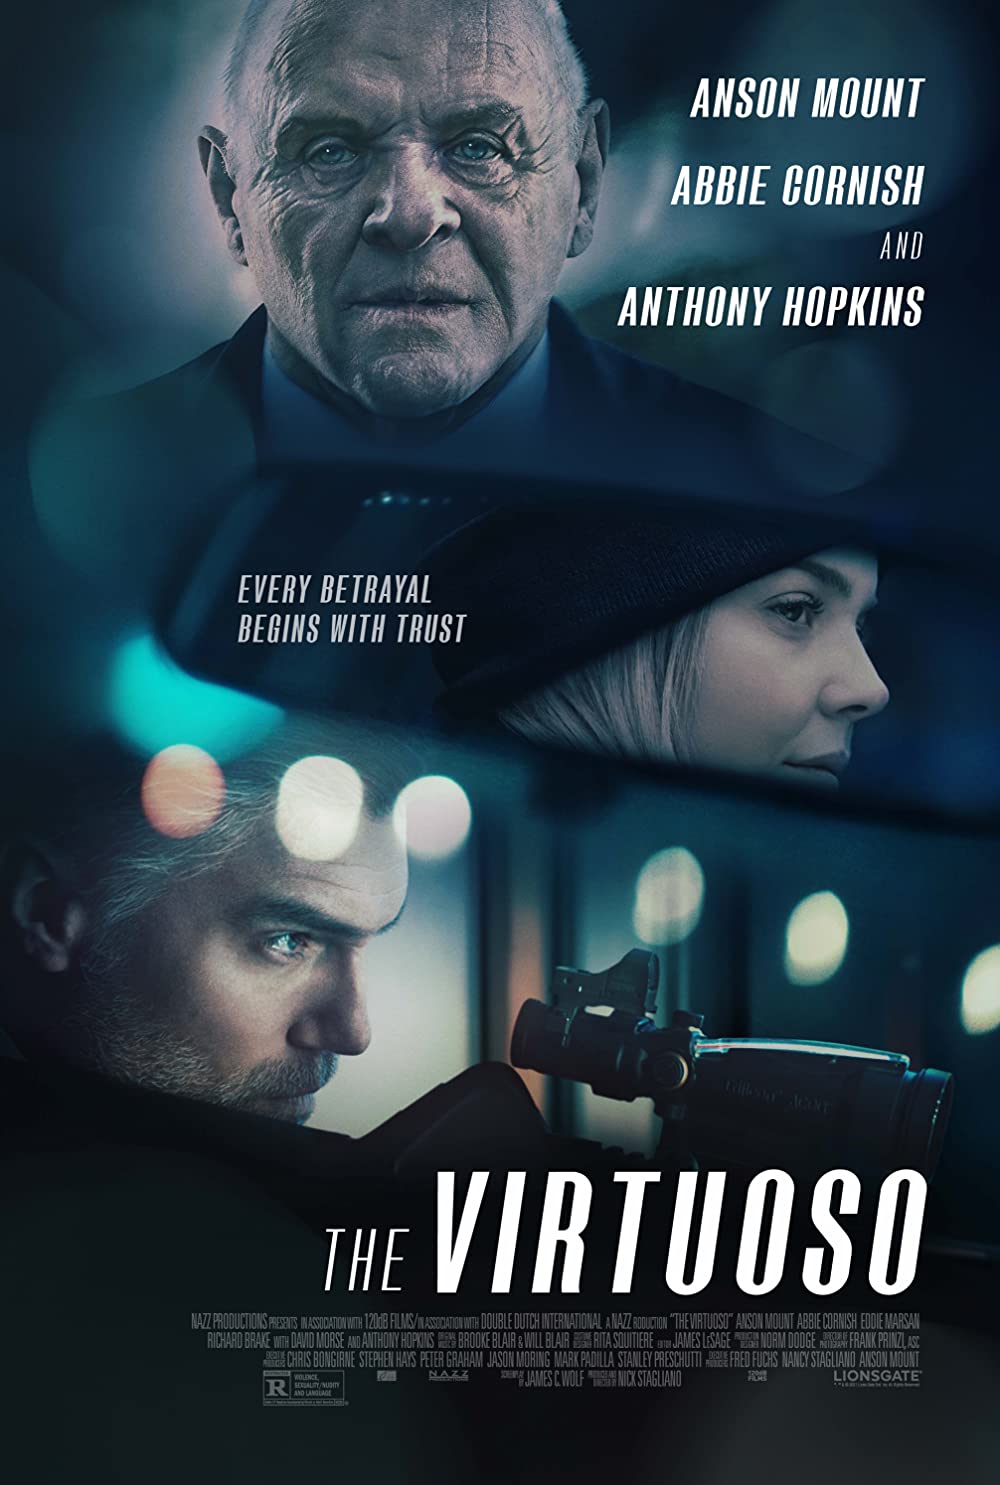 Filmbeschreibung zu The Virtuoso